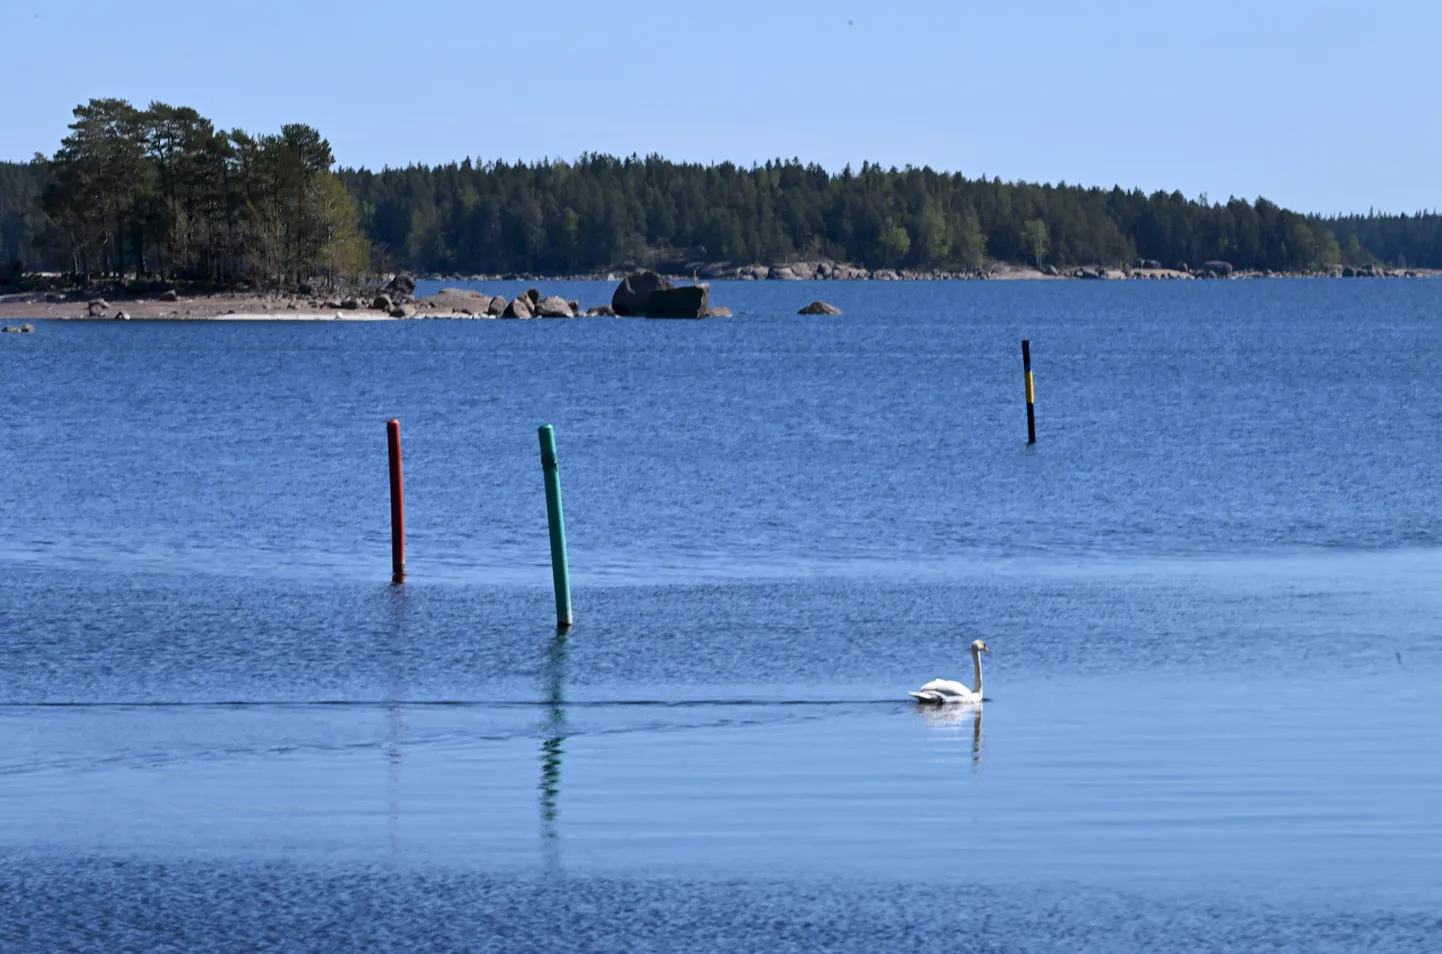 Soome ja Venemaa (paistab kaugemal) vaheline piir Soome Virolahti lahes